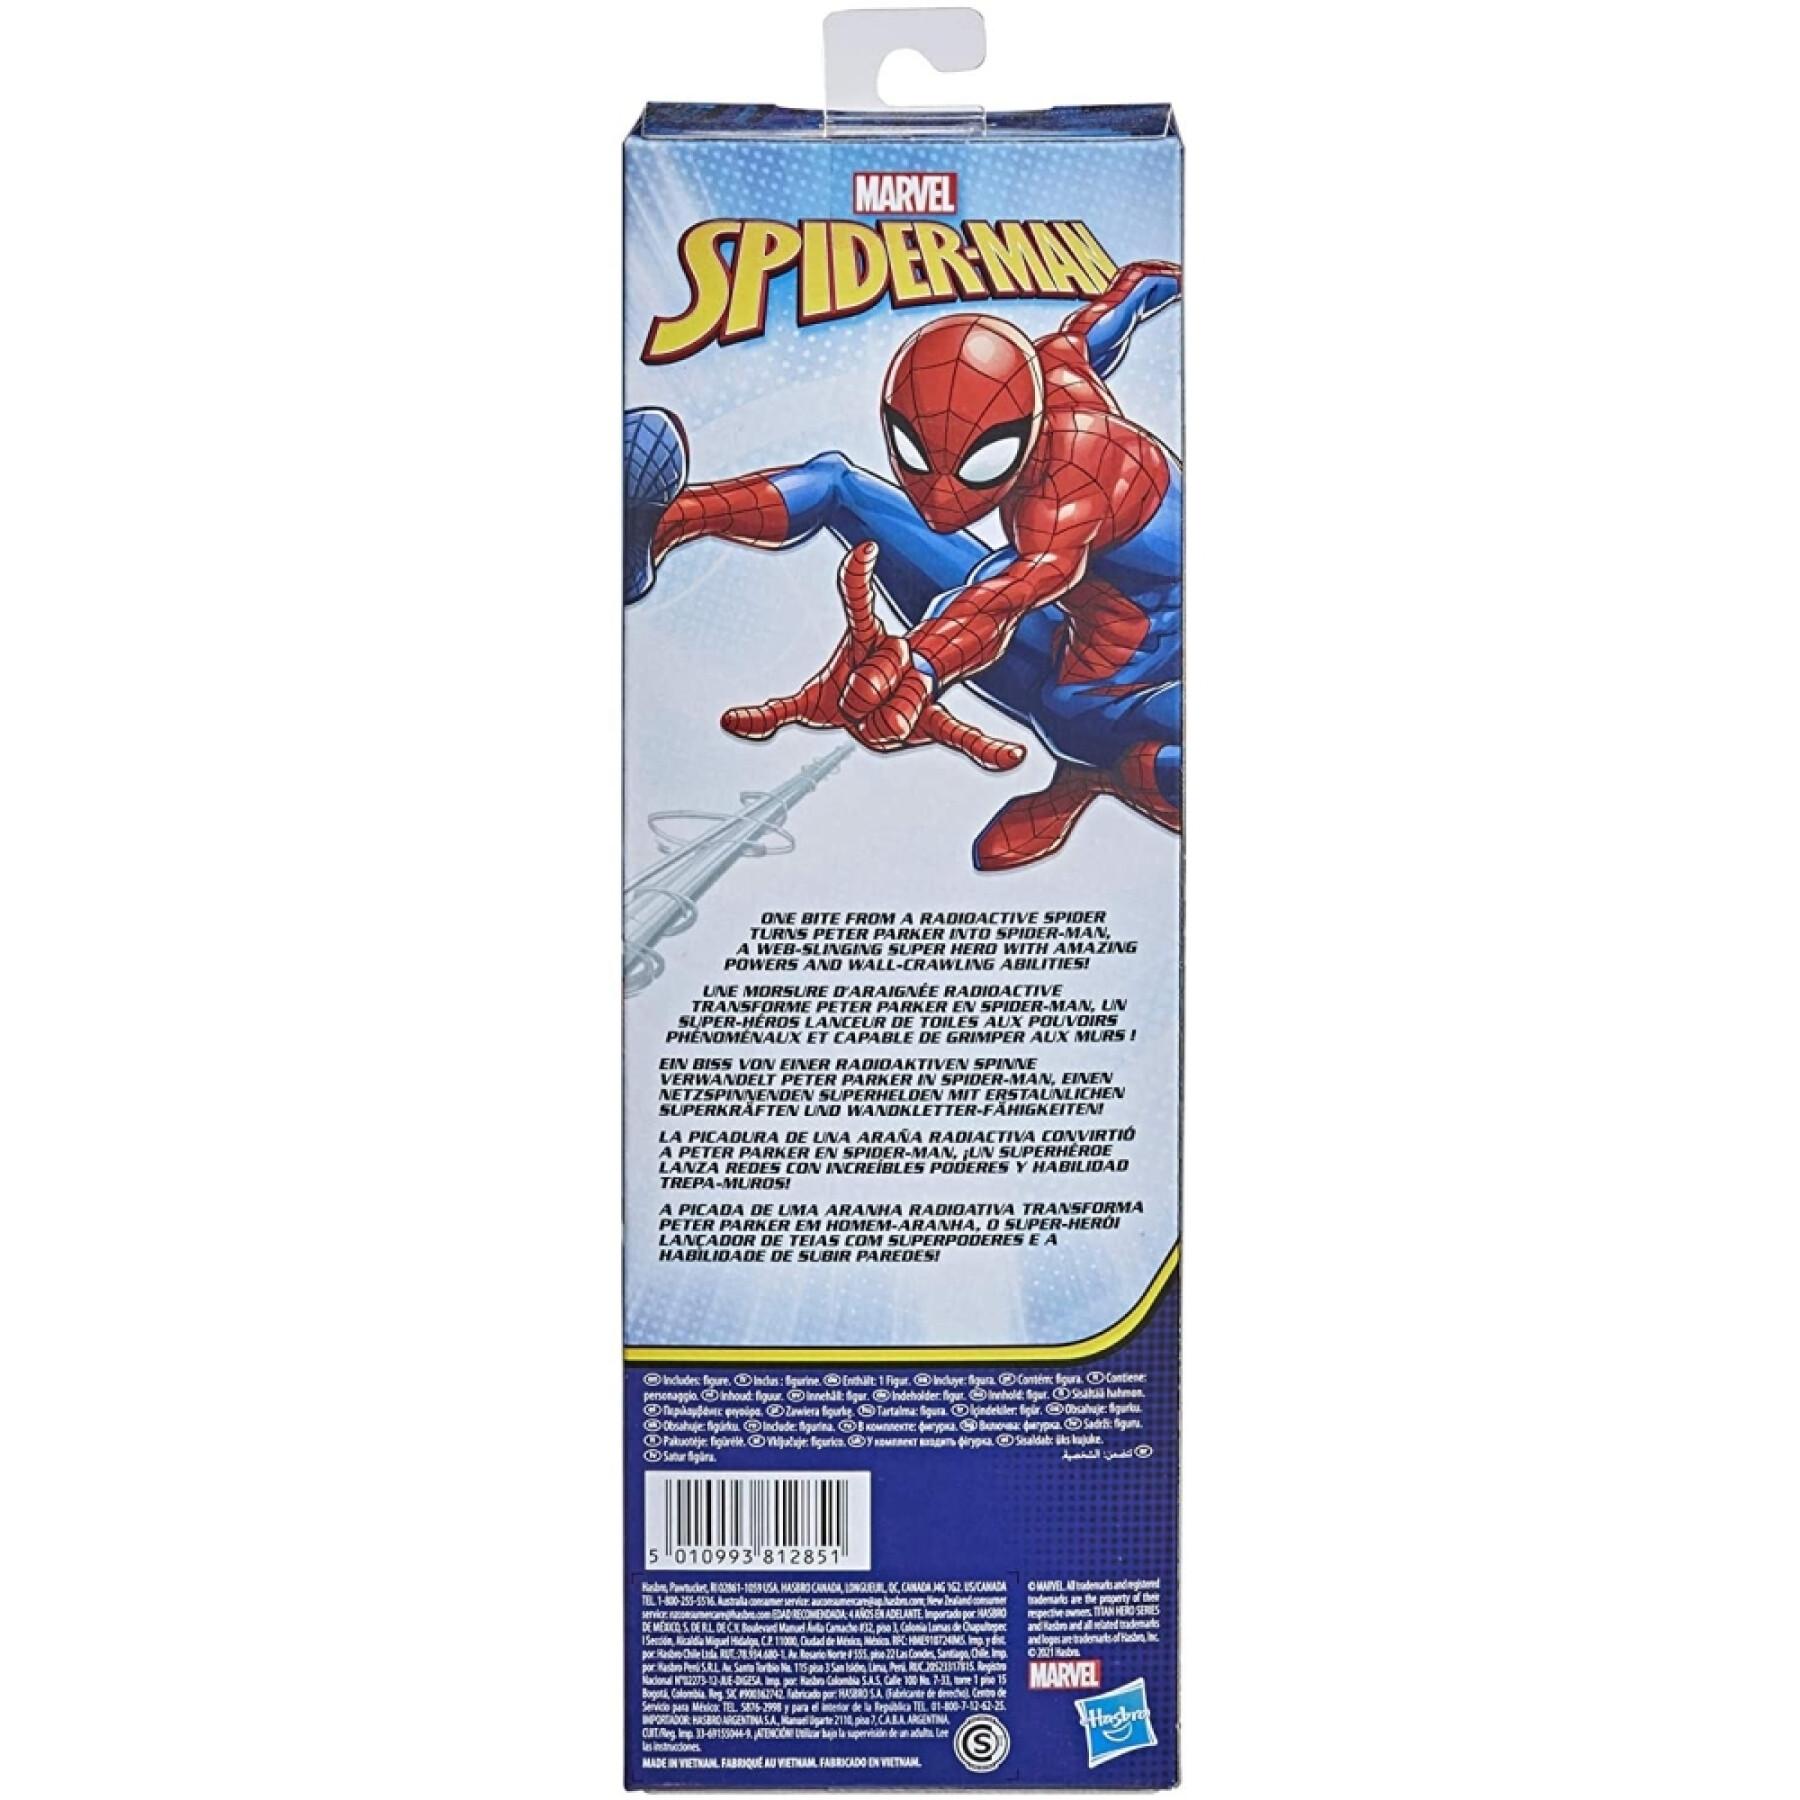 Spiderman tytan figurka akcji Hasbro